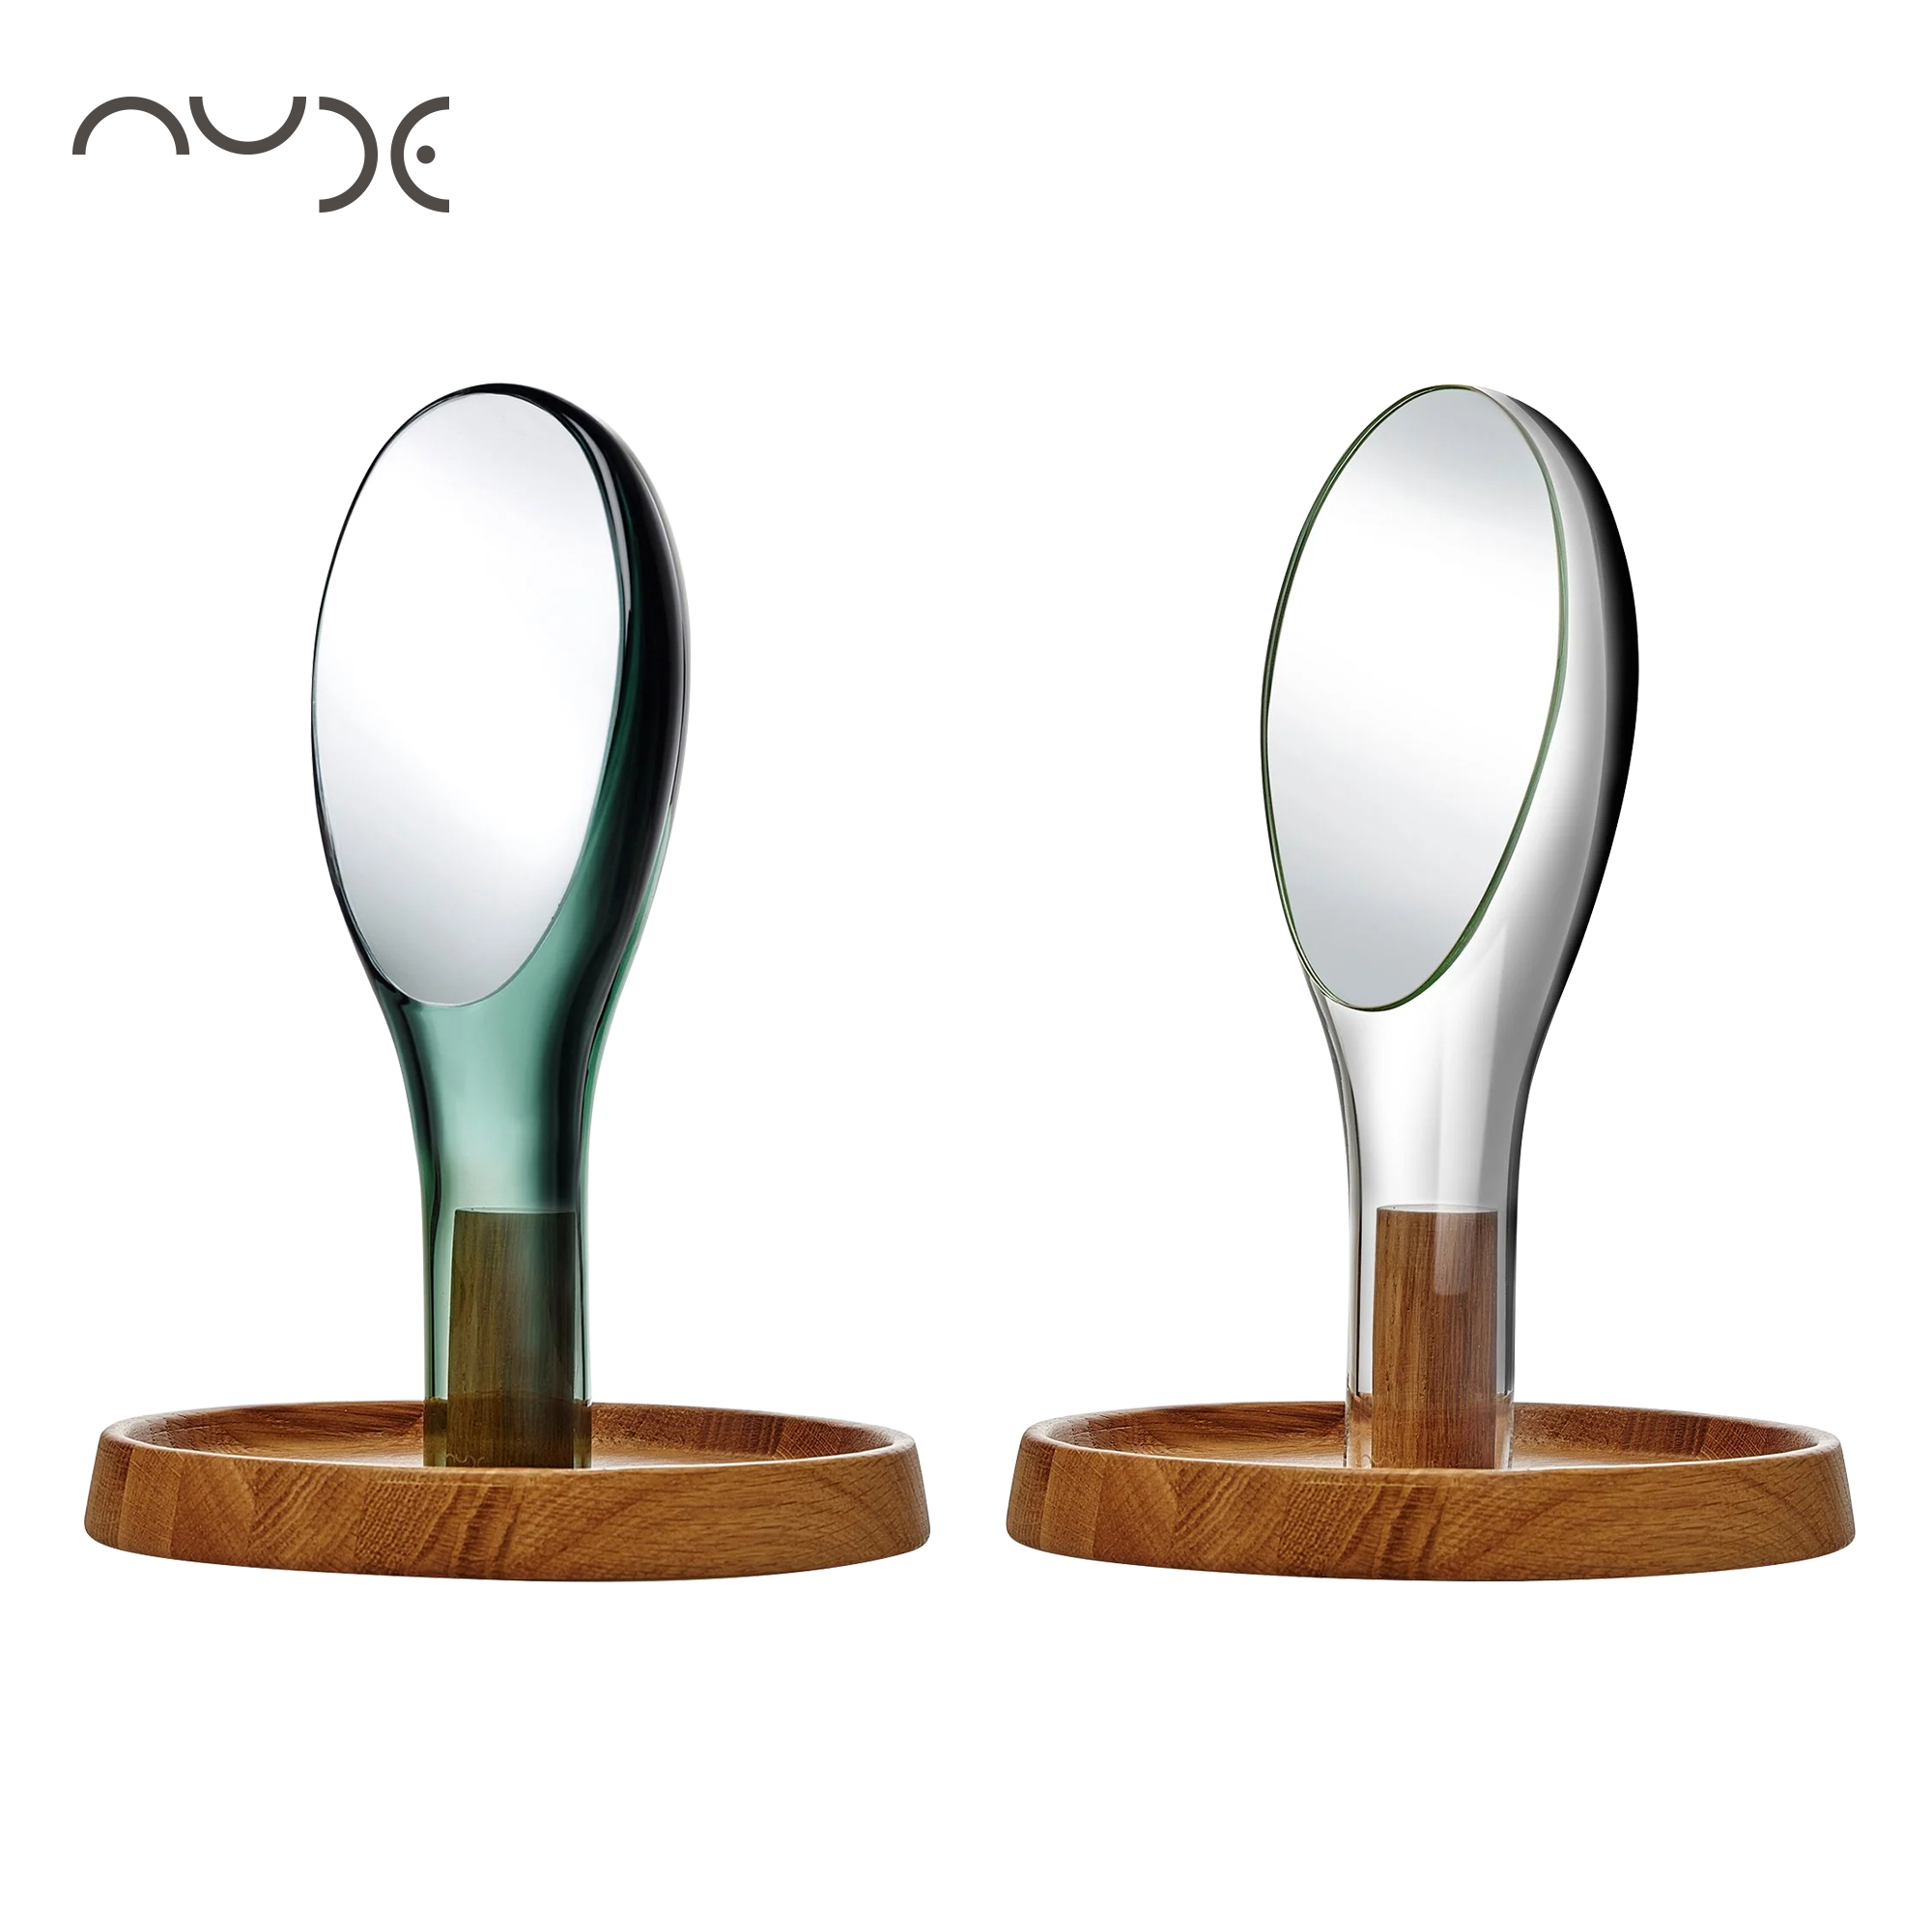 土耳其Nude进口Moon梳妆镜水晶玻璃手持镜台式美妆镜设计师款礼物